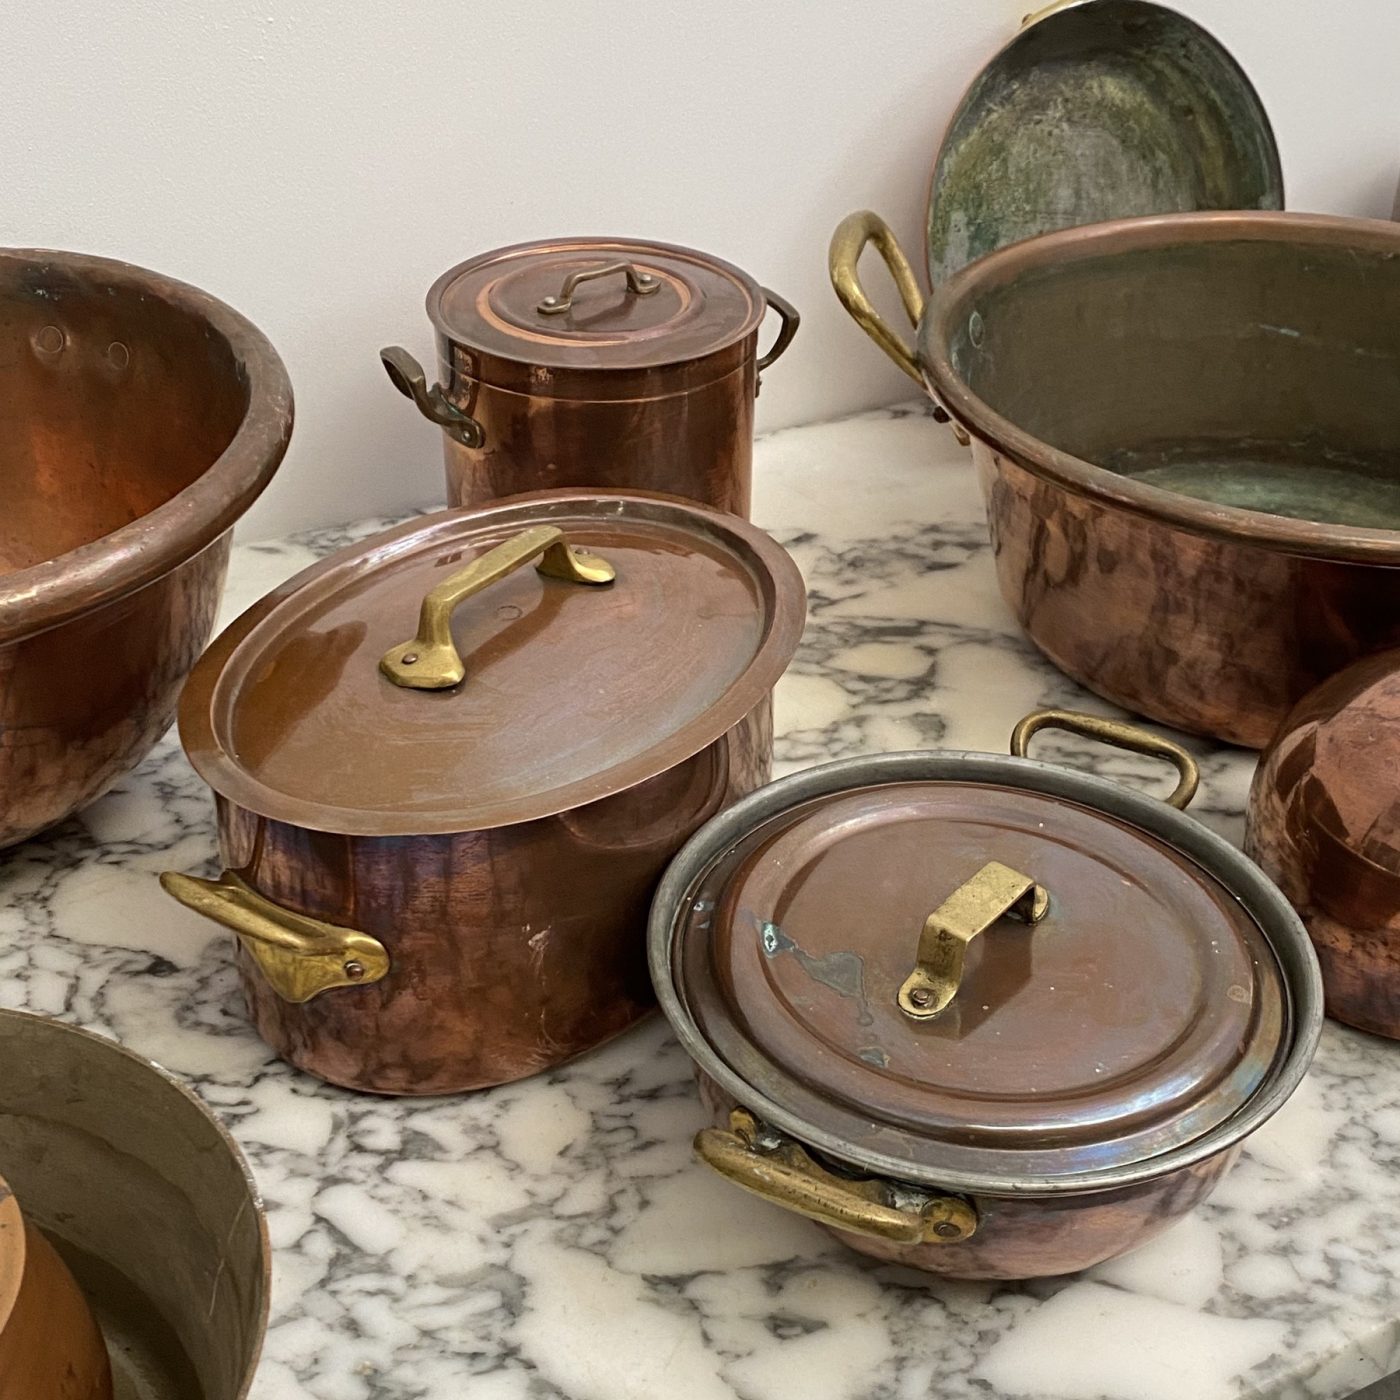 objet-vagabond-copper-collection0009